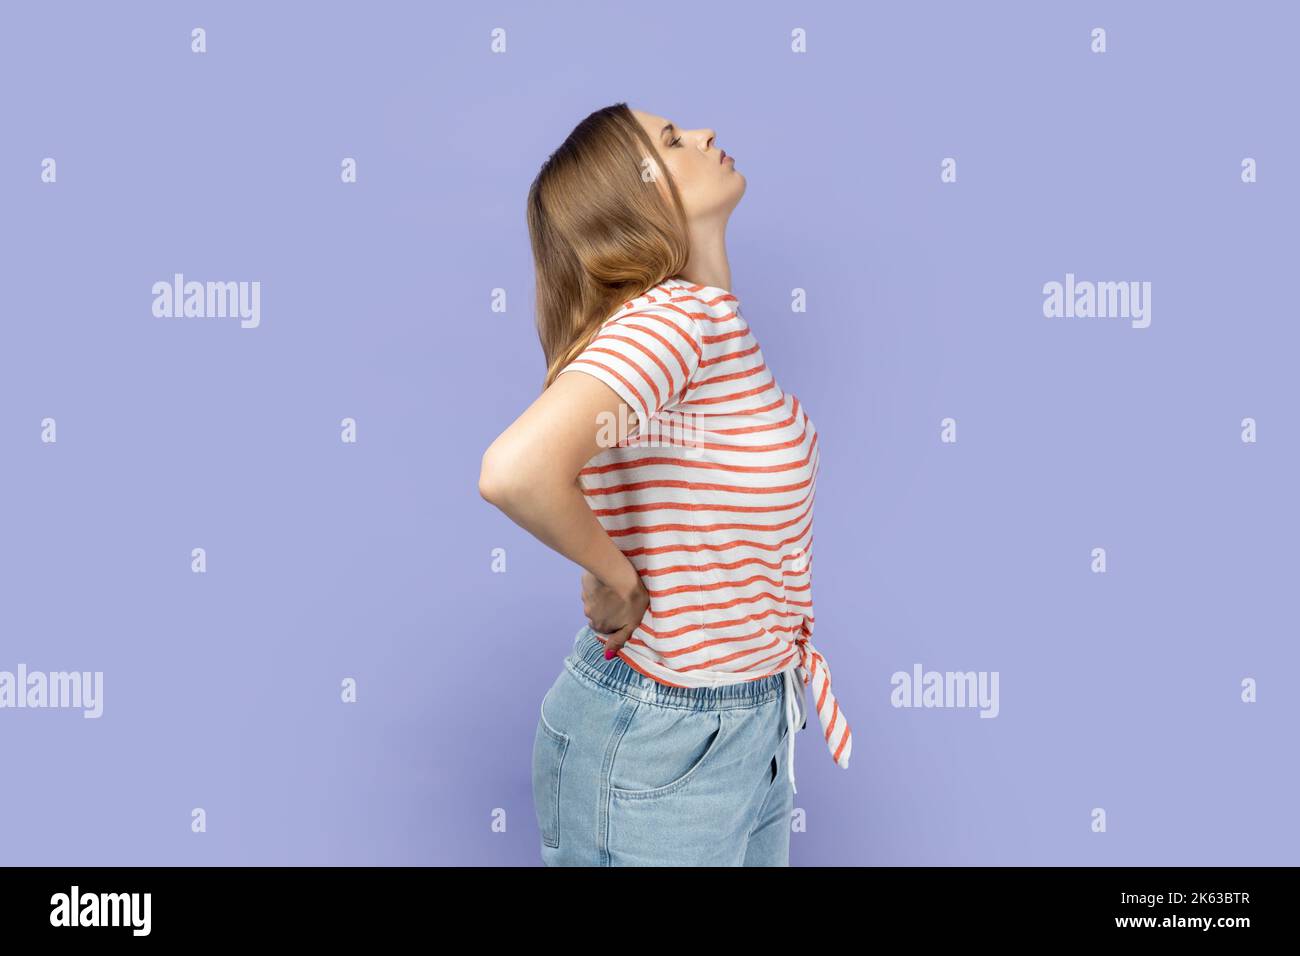 Seitenansicht einer blonden Frau, die gestreiftes T-Shirt trägt, das den Rücken berührt und vor Schmerzen schreit, Rückenschmerzen leidet, Beschwerden an der unteren Lendenwirbelsäule hat. Innenaufnahme des Studios isoliert auf violettem Hintergrund. Stockfoto